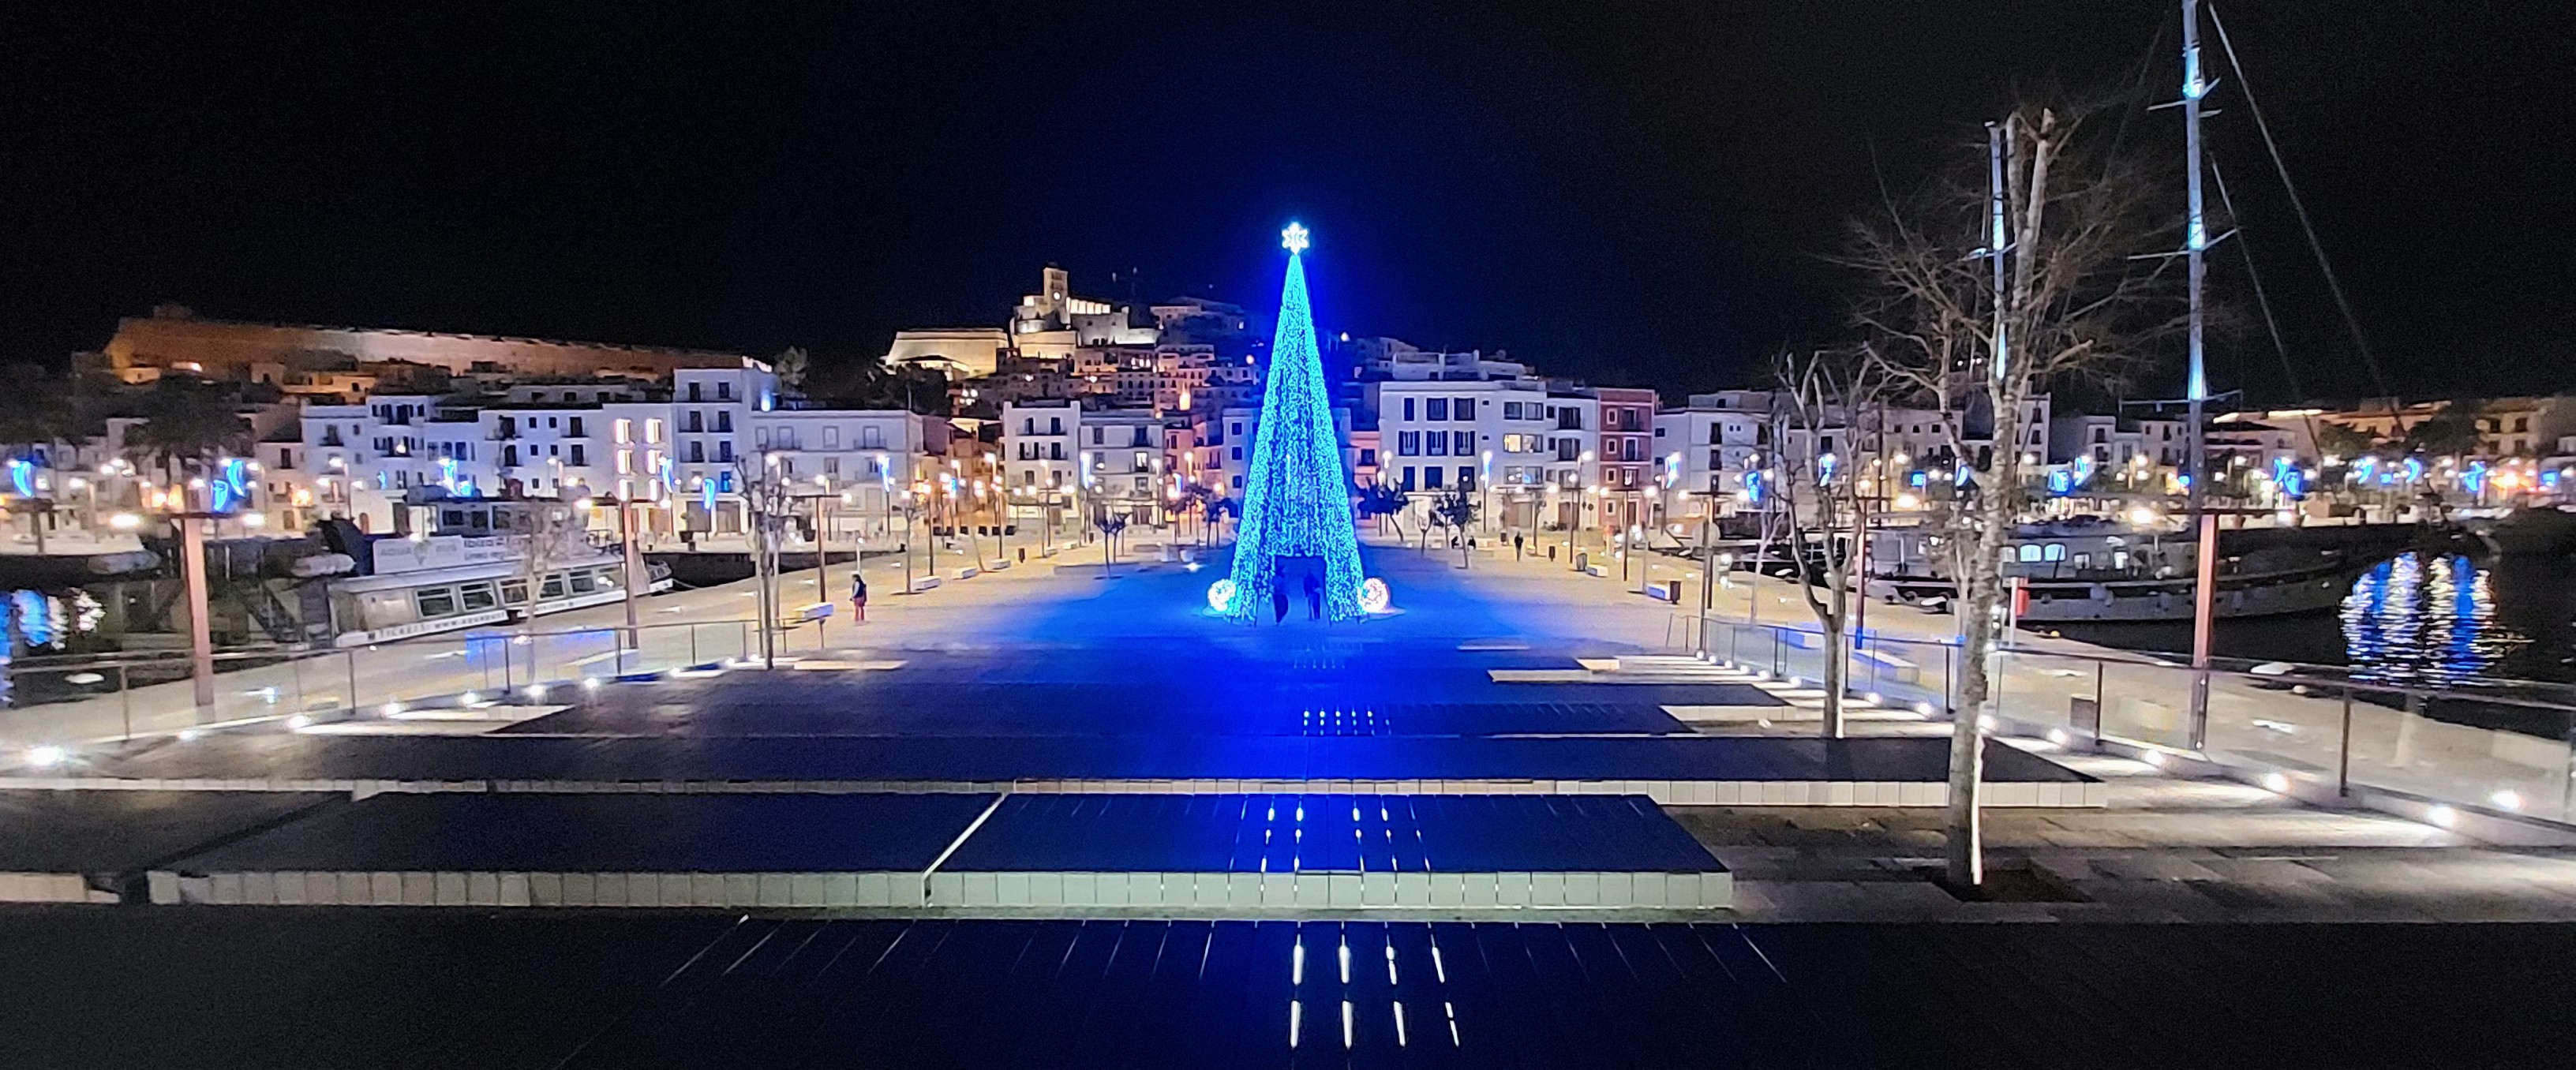 La Autoritat Portuària de Balears organiza el primer concurso de iluminación navideña en los puertos de Eivissa y la Savina